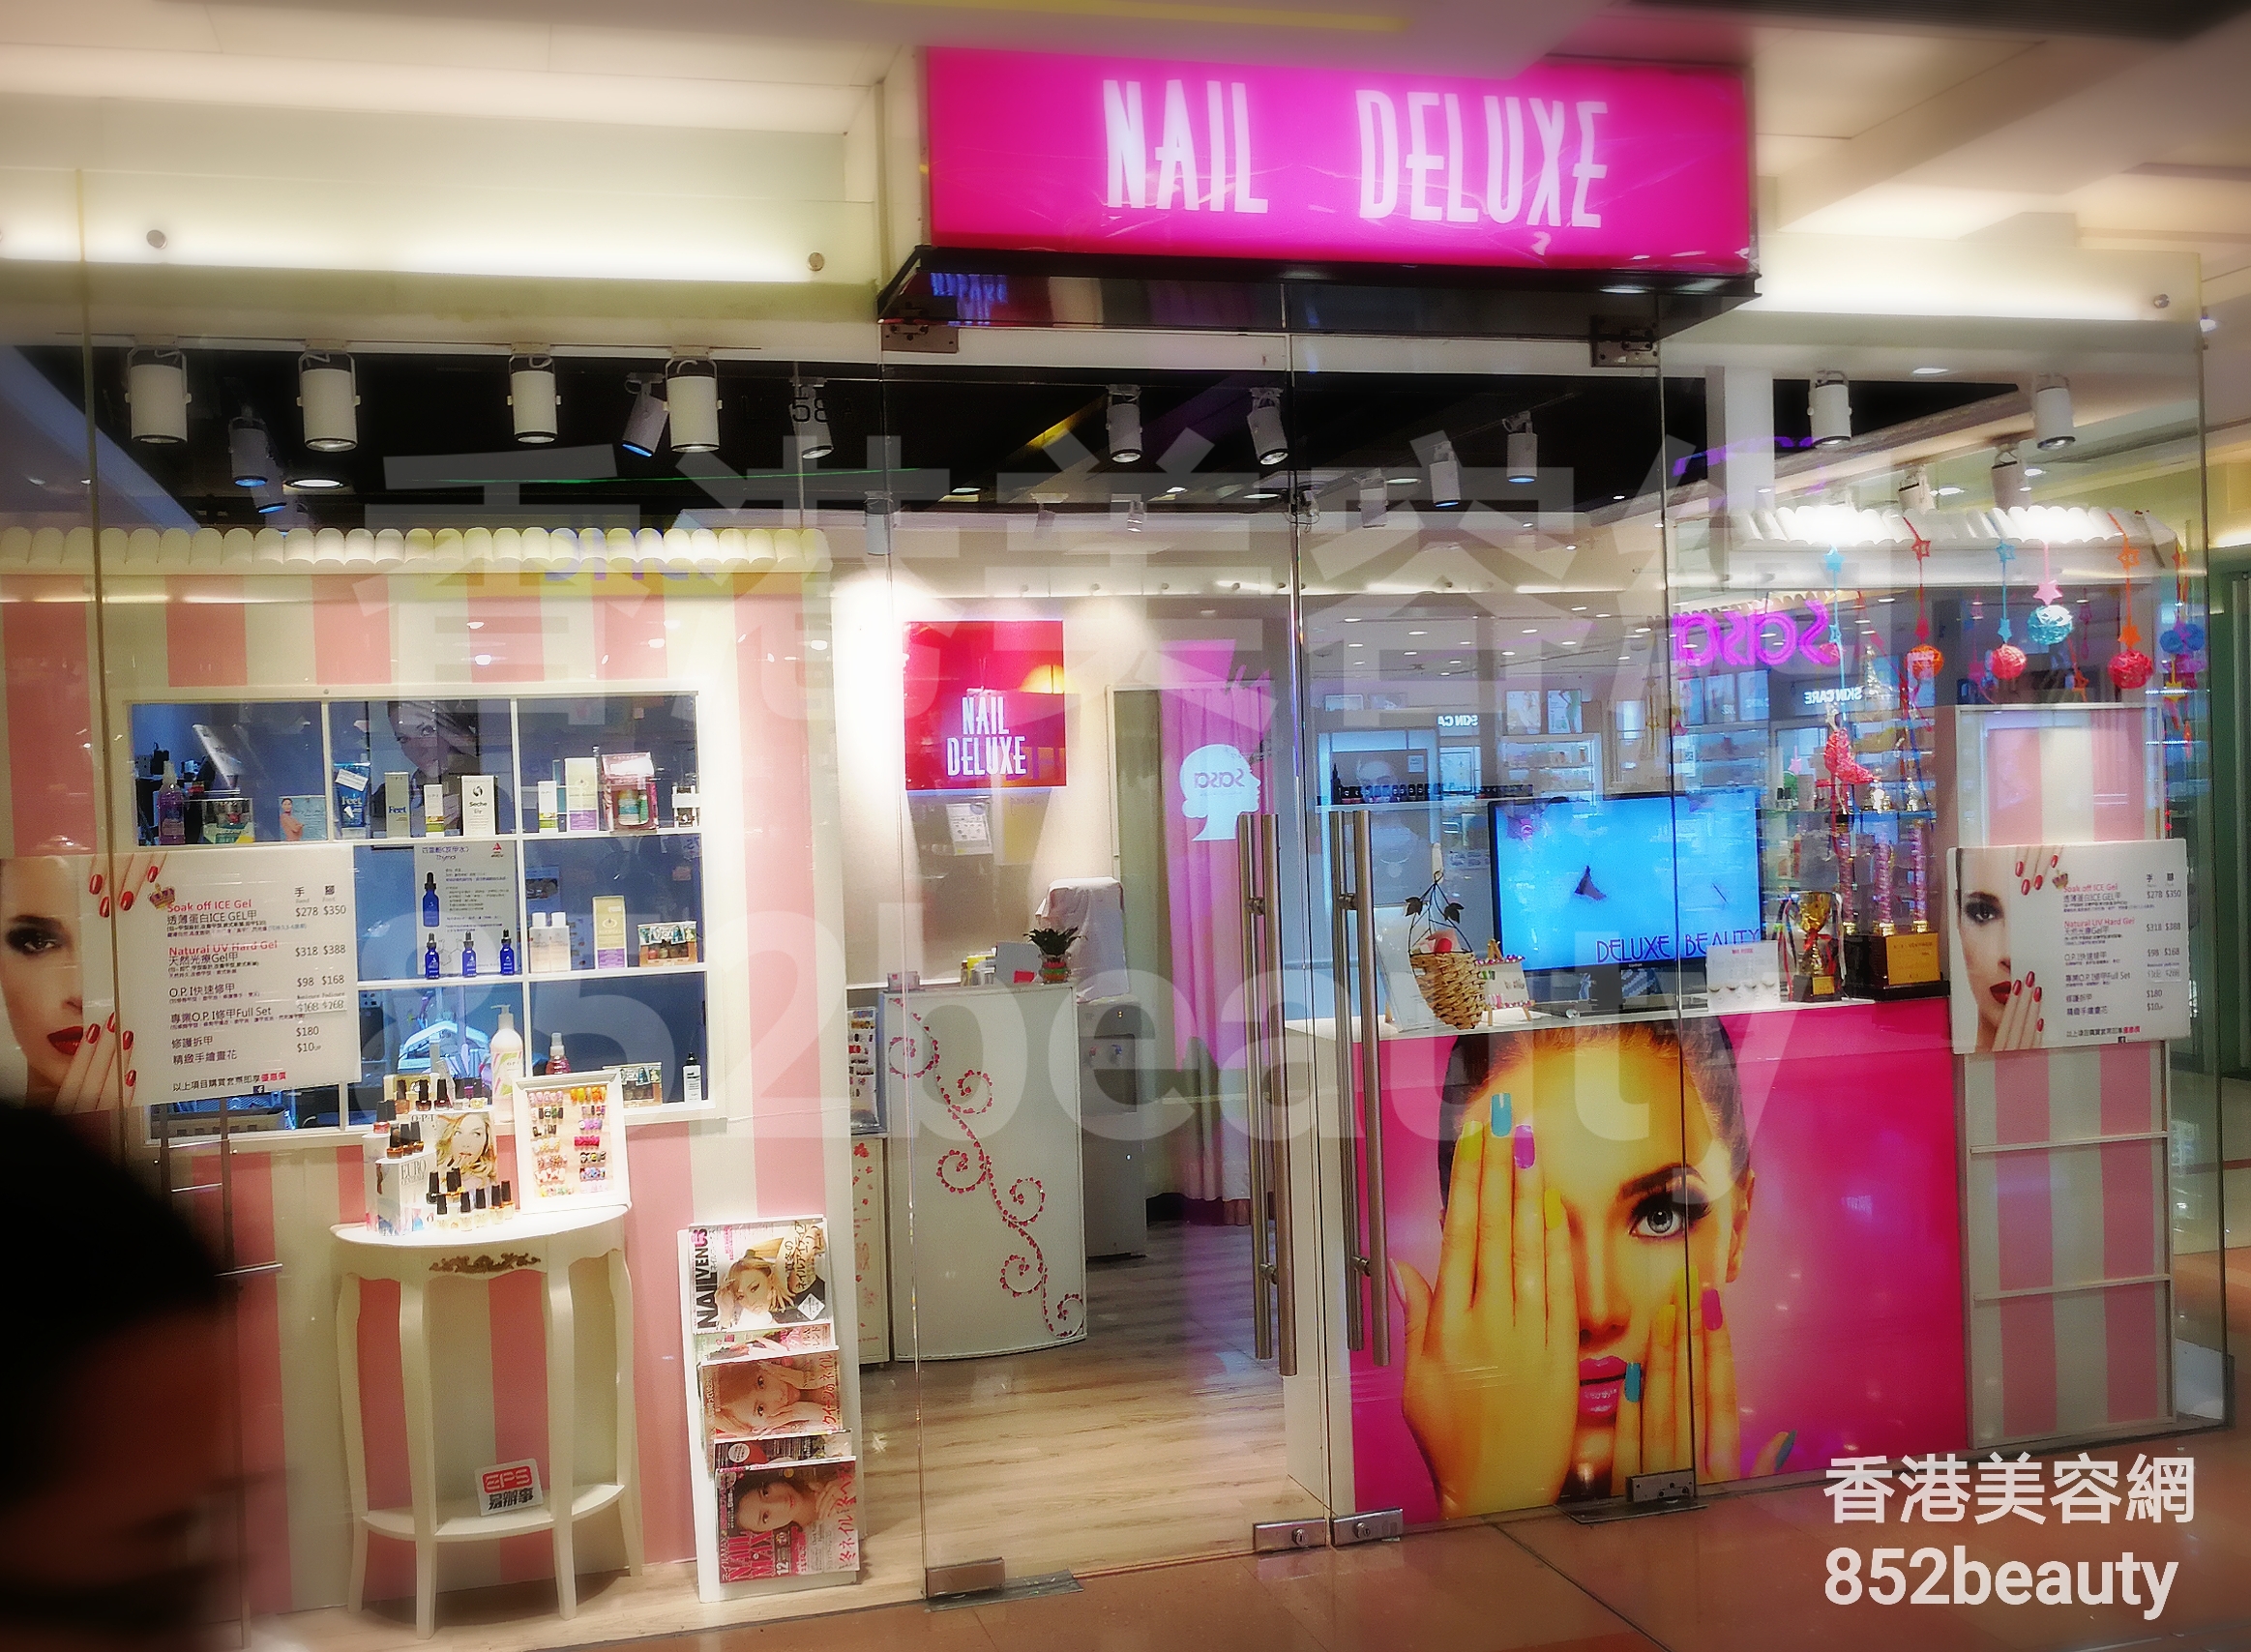 香港美容網 Hong Kong Beauty Salon 美容院 / 美容師: NAIL DELUXE (調景嶺店)